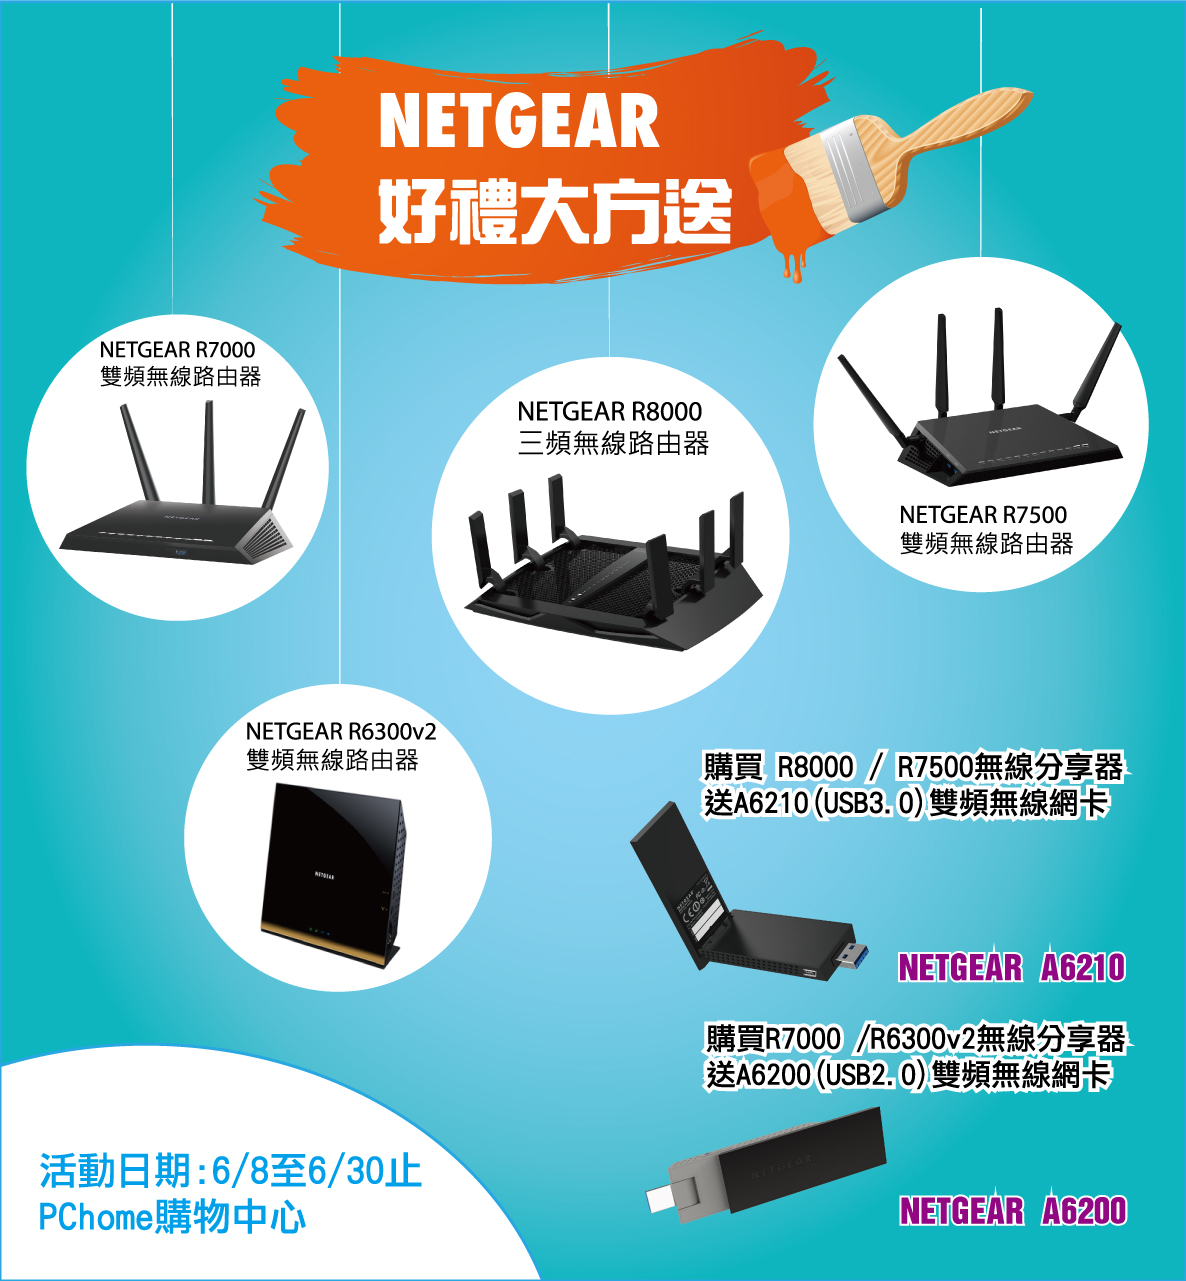 NETGEAR好禮大方送 購買指定無線路由器 享受獨家超值好禮